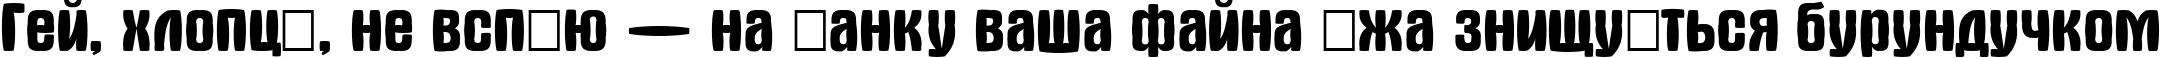 Пример написания шрифтом a_AlternaSw текста на украинском